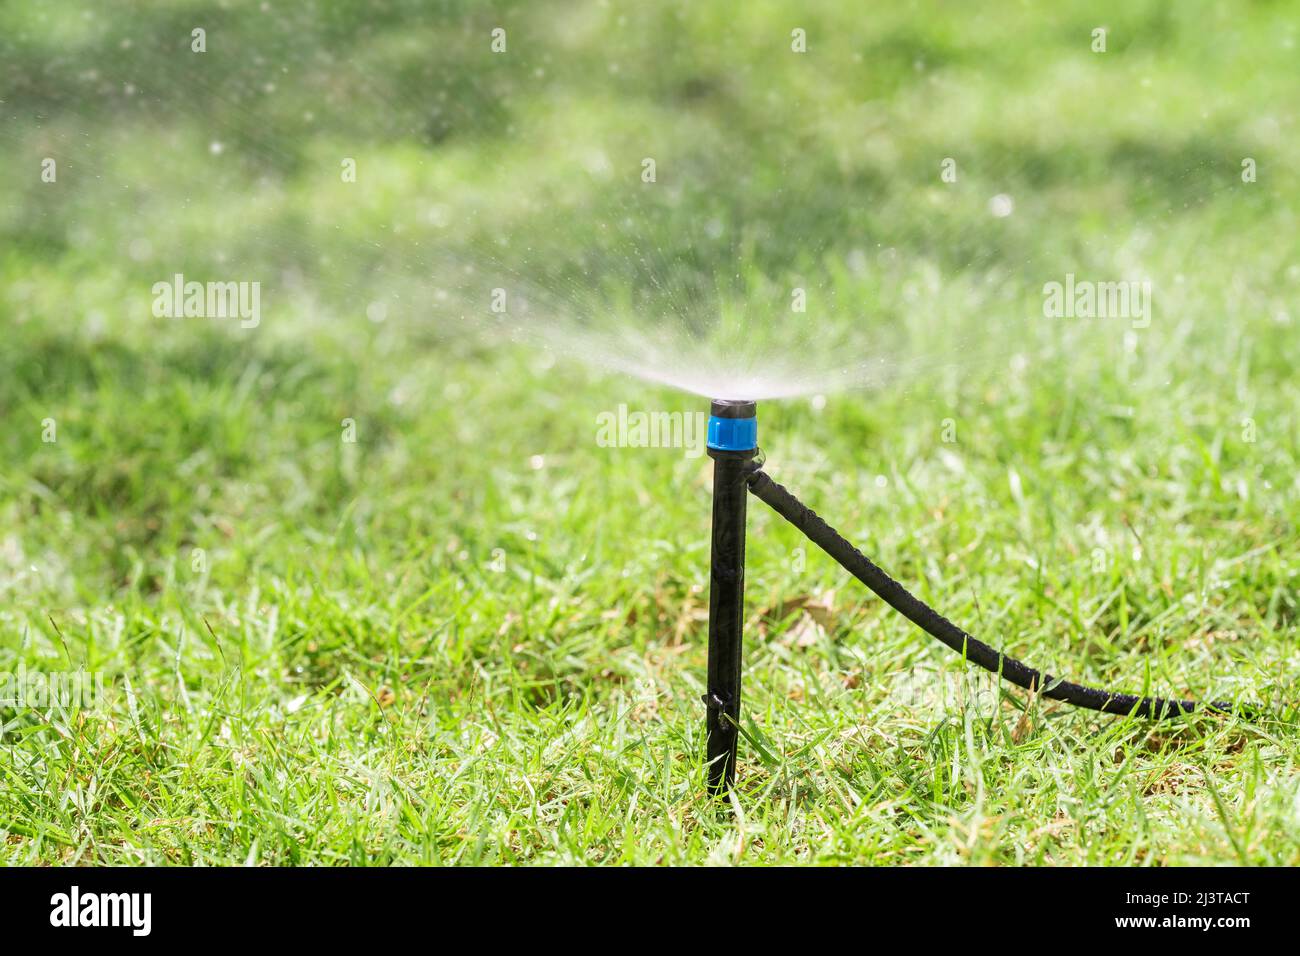 Nahaufnahme der automatischen Sprinkler zur Bewässerung des Rasens Stockfoto